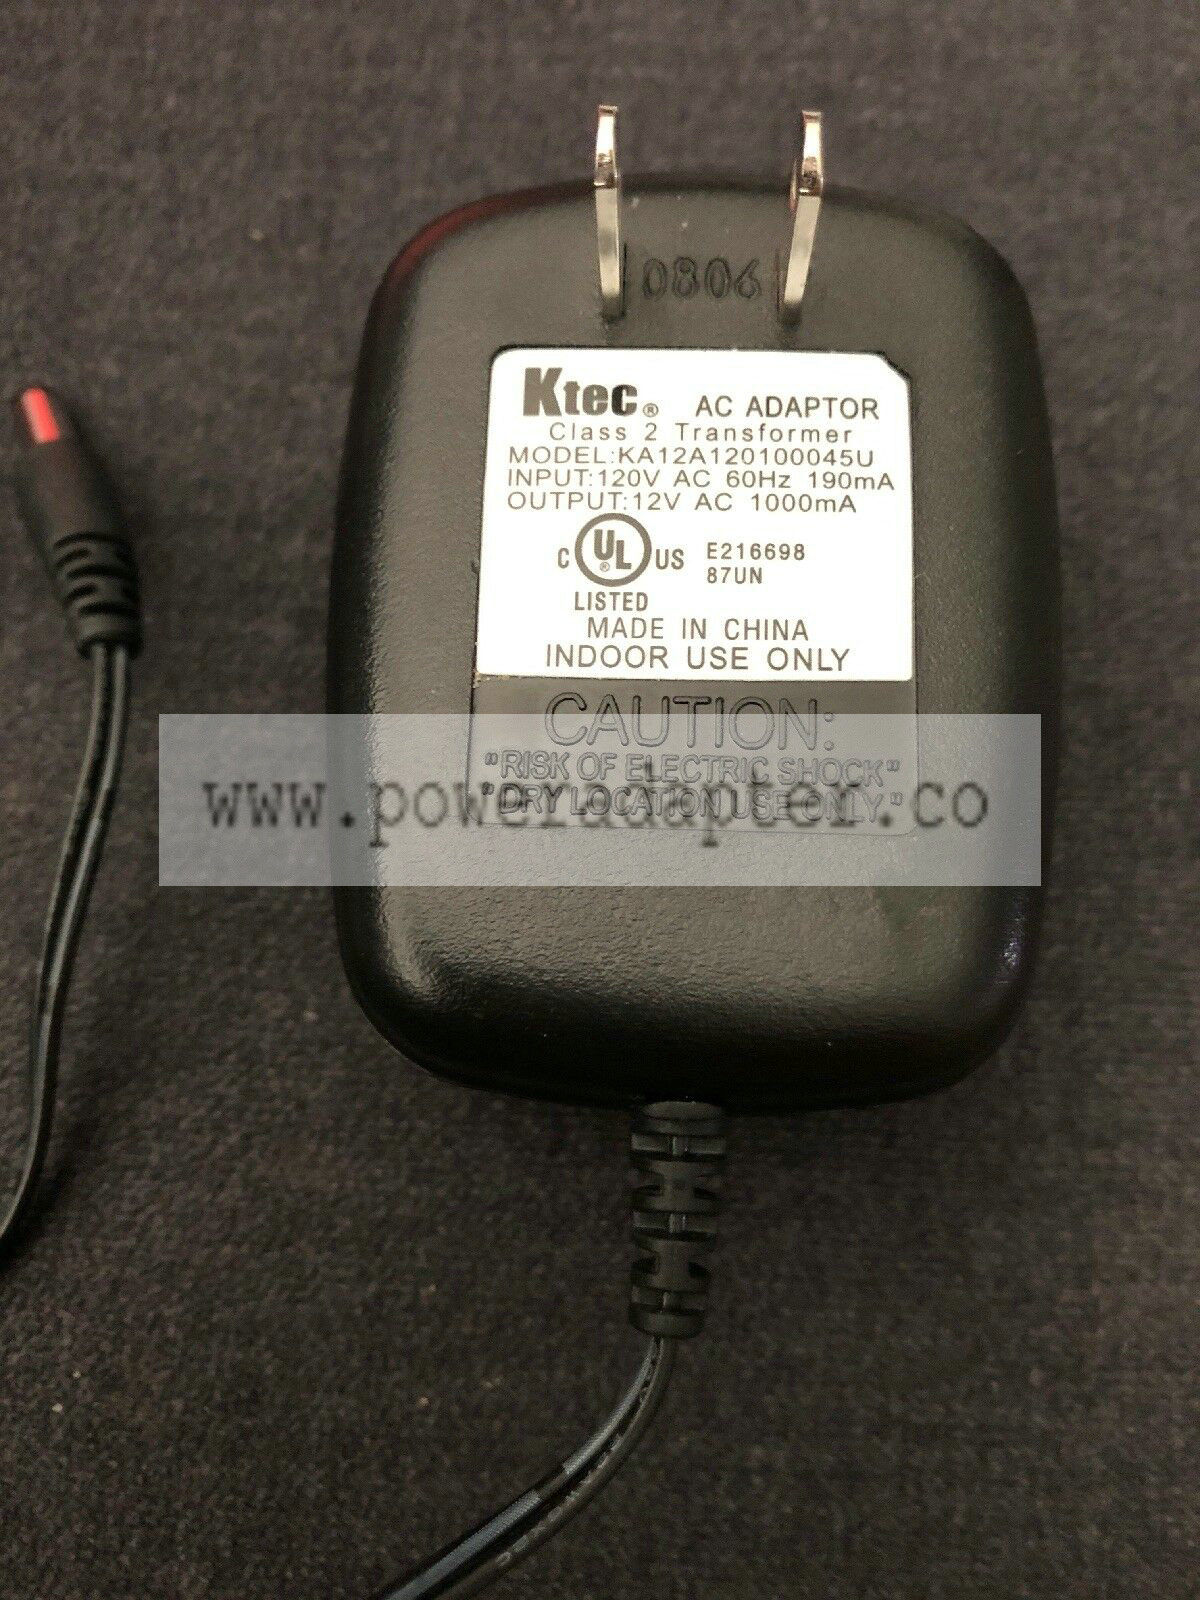 OEM KTEC 12V AC 1000mA KA12A120100045U plug AC/DC Power Supply Adapter EUC model no:KA12A120100045U input:12V AC 60hz